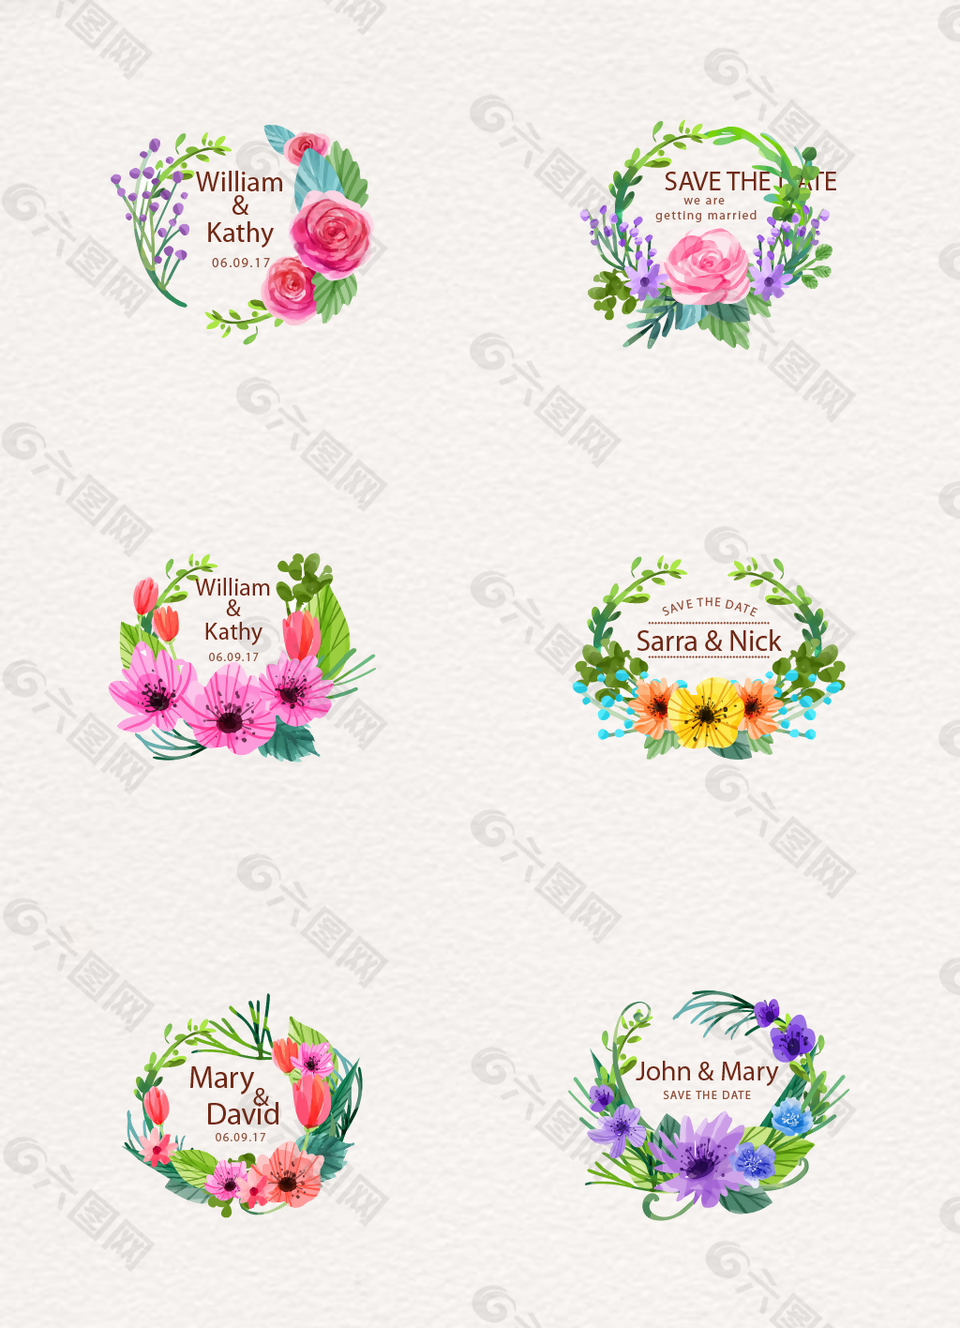 水彩绘花卉婚礼标签矢量素材设计